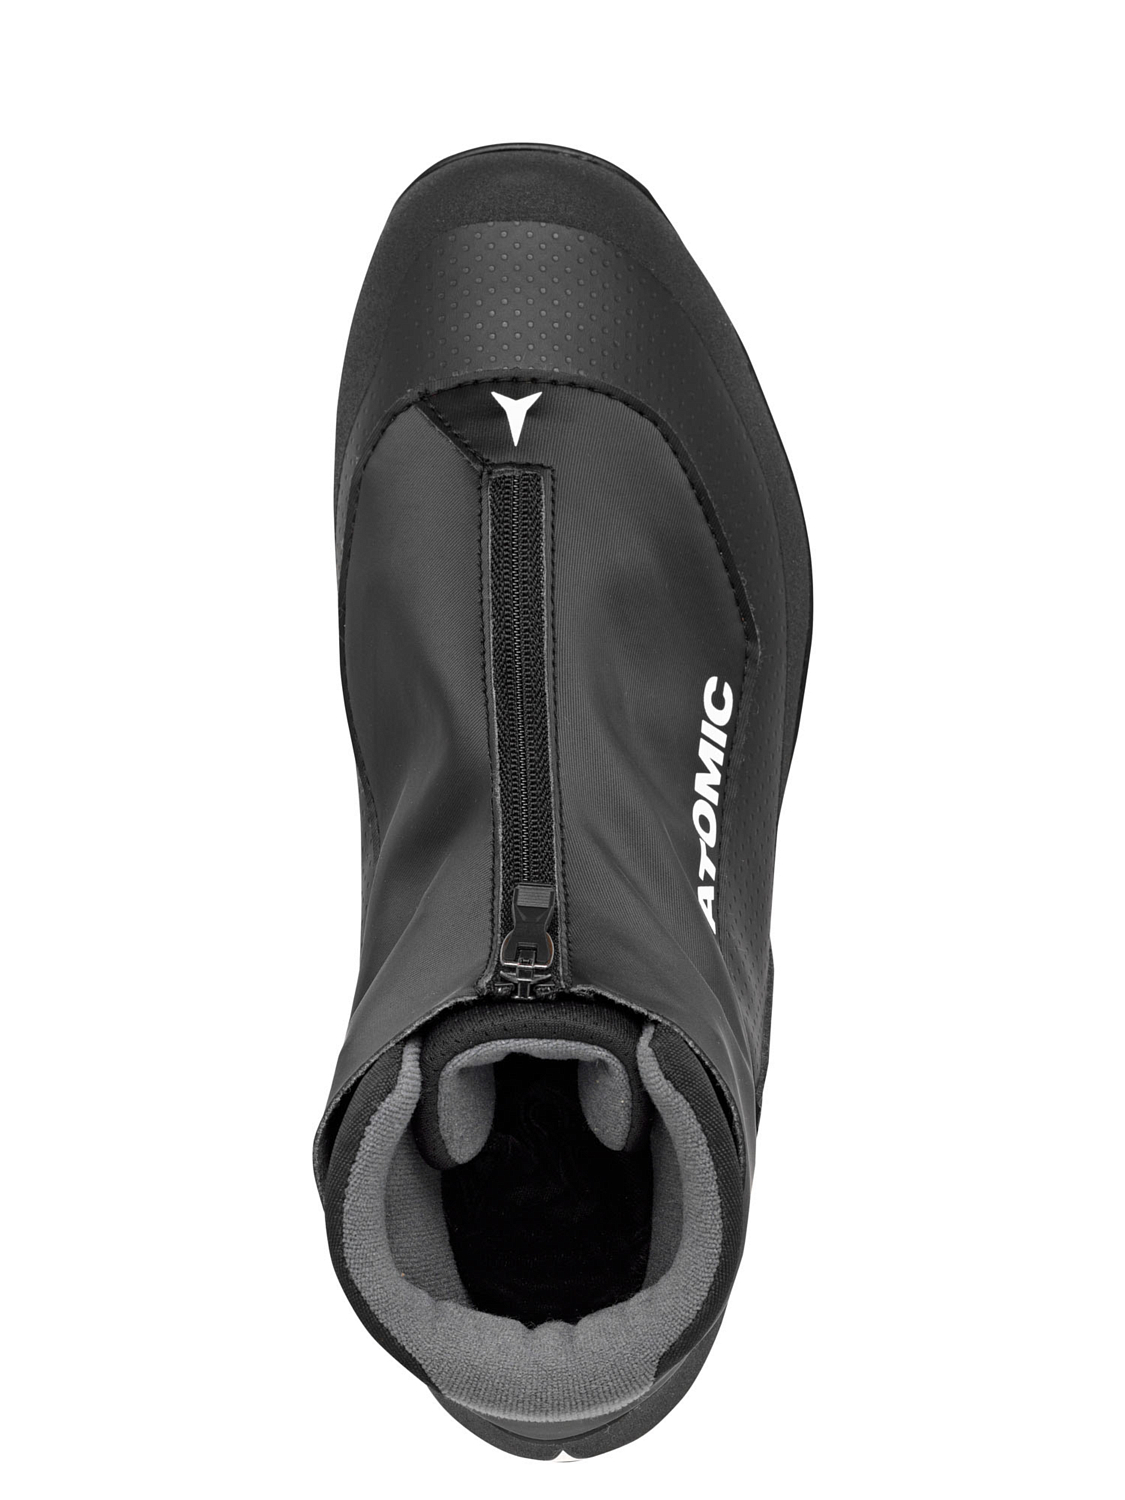 Лыжные ботинки ATOMIC Savor 25 Black/Red